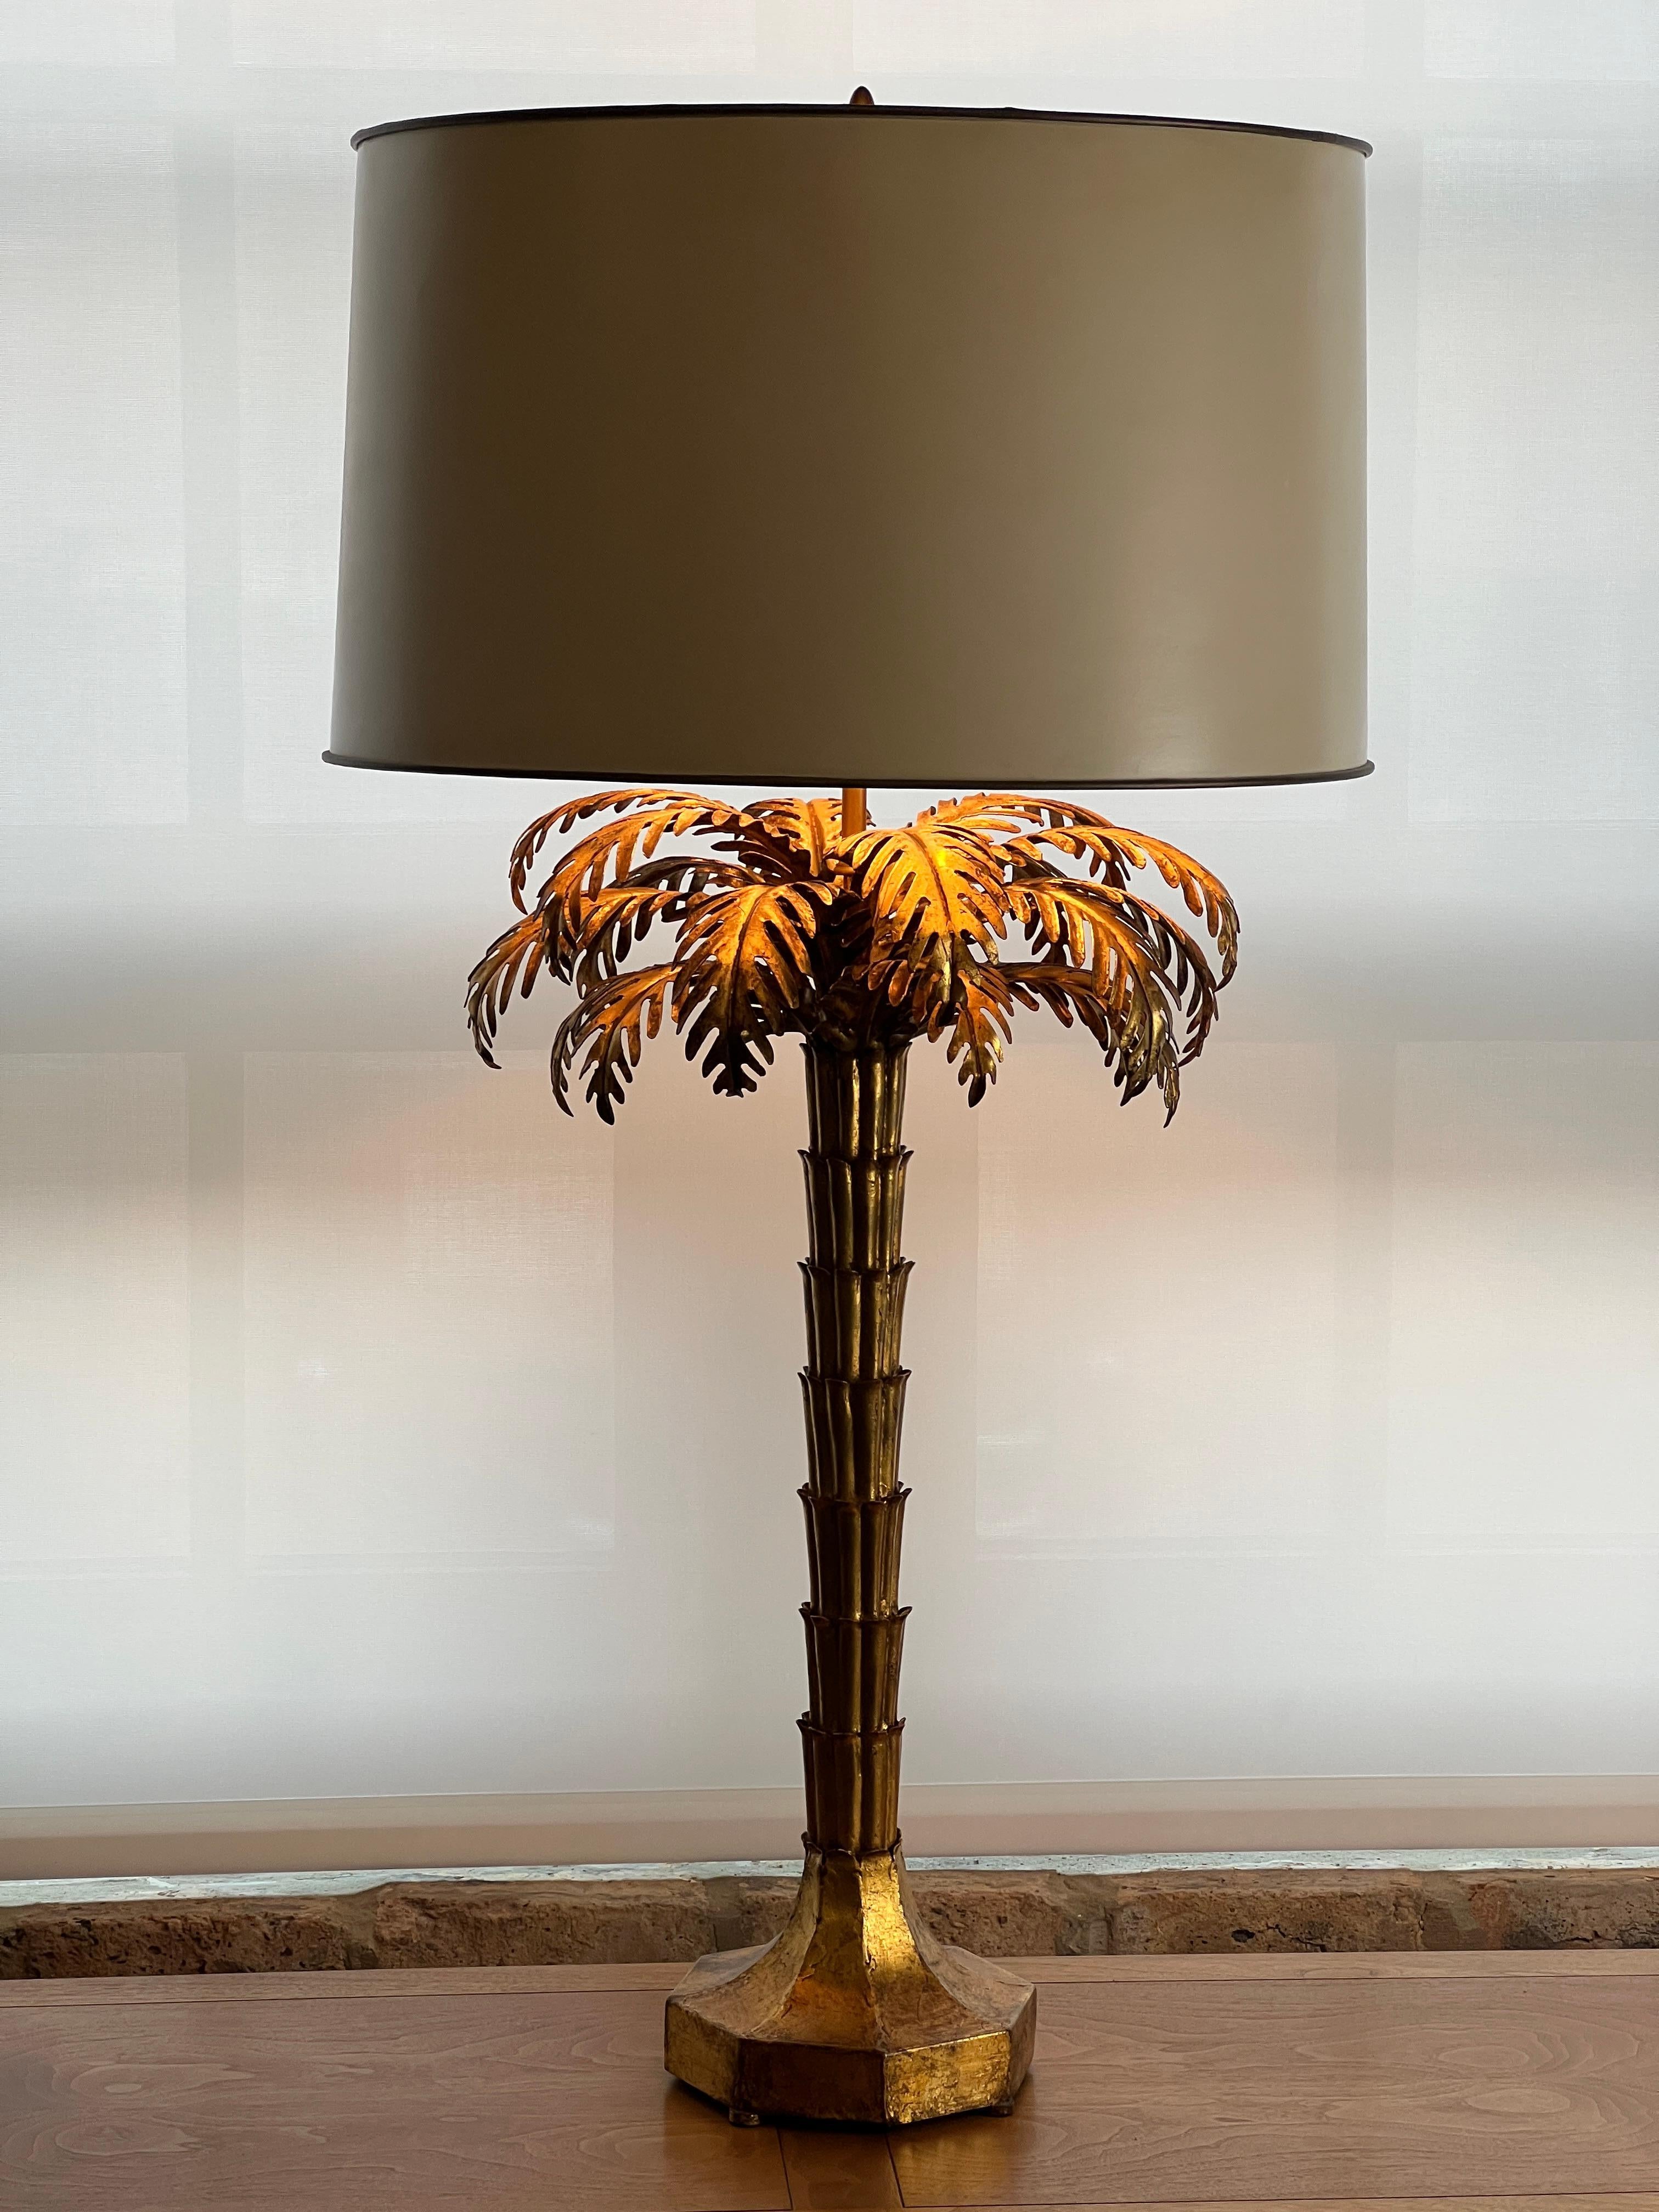 Magnifique et rare paire de lampes de table en forme de palmier doré de Warren Kessler (attr) des années 1950 (rarement trouvées en paire - avec une dorure et une patine identiques).  Ils sont tout simplement magnifiques.  Les lampes fonctionnent et